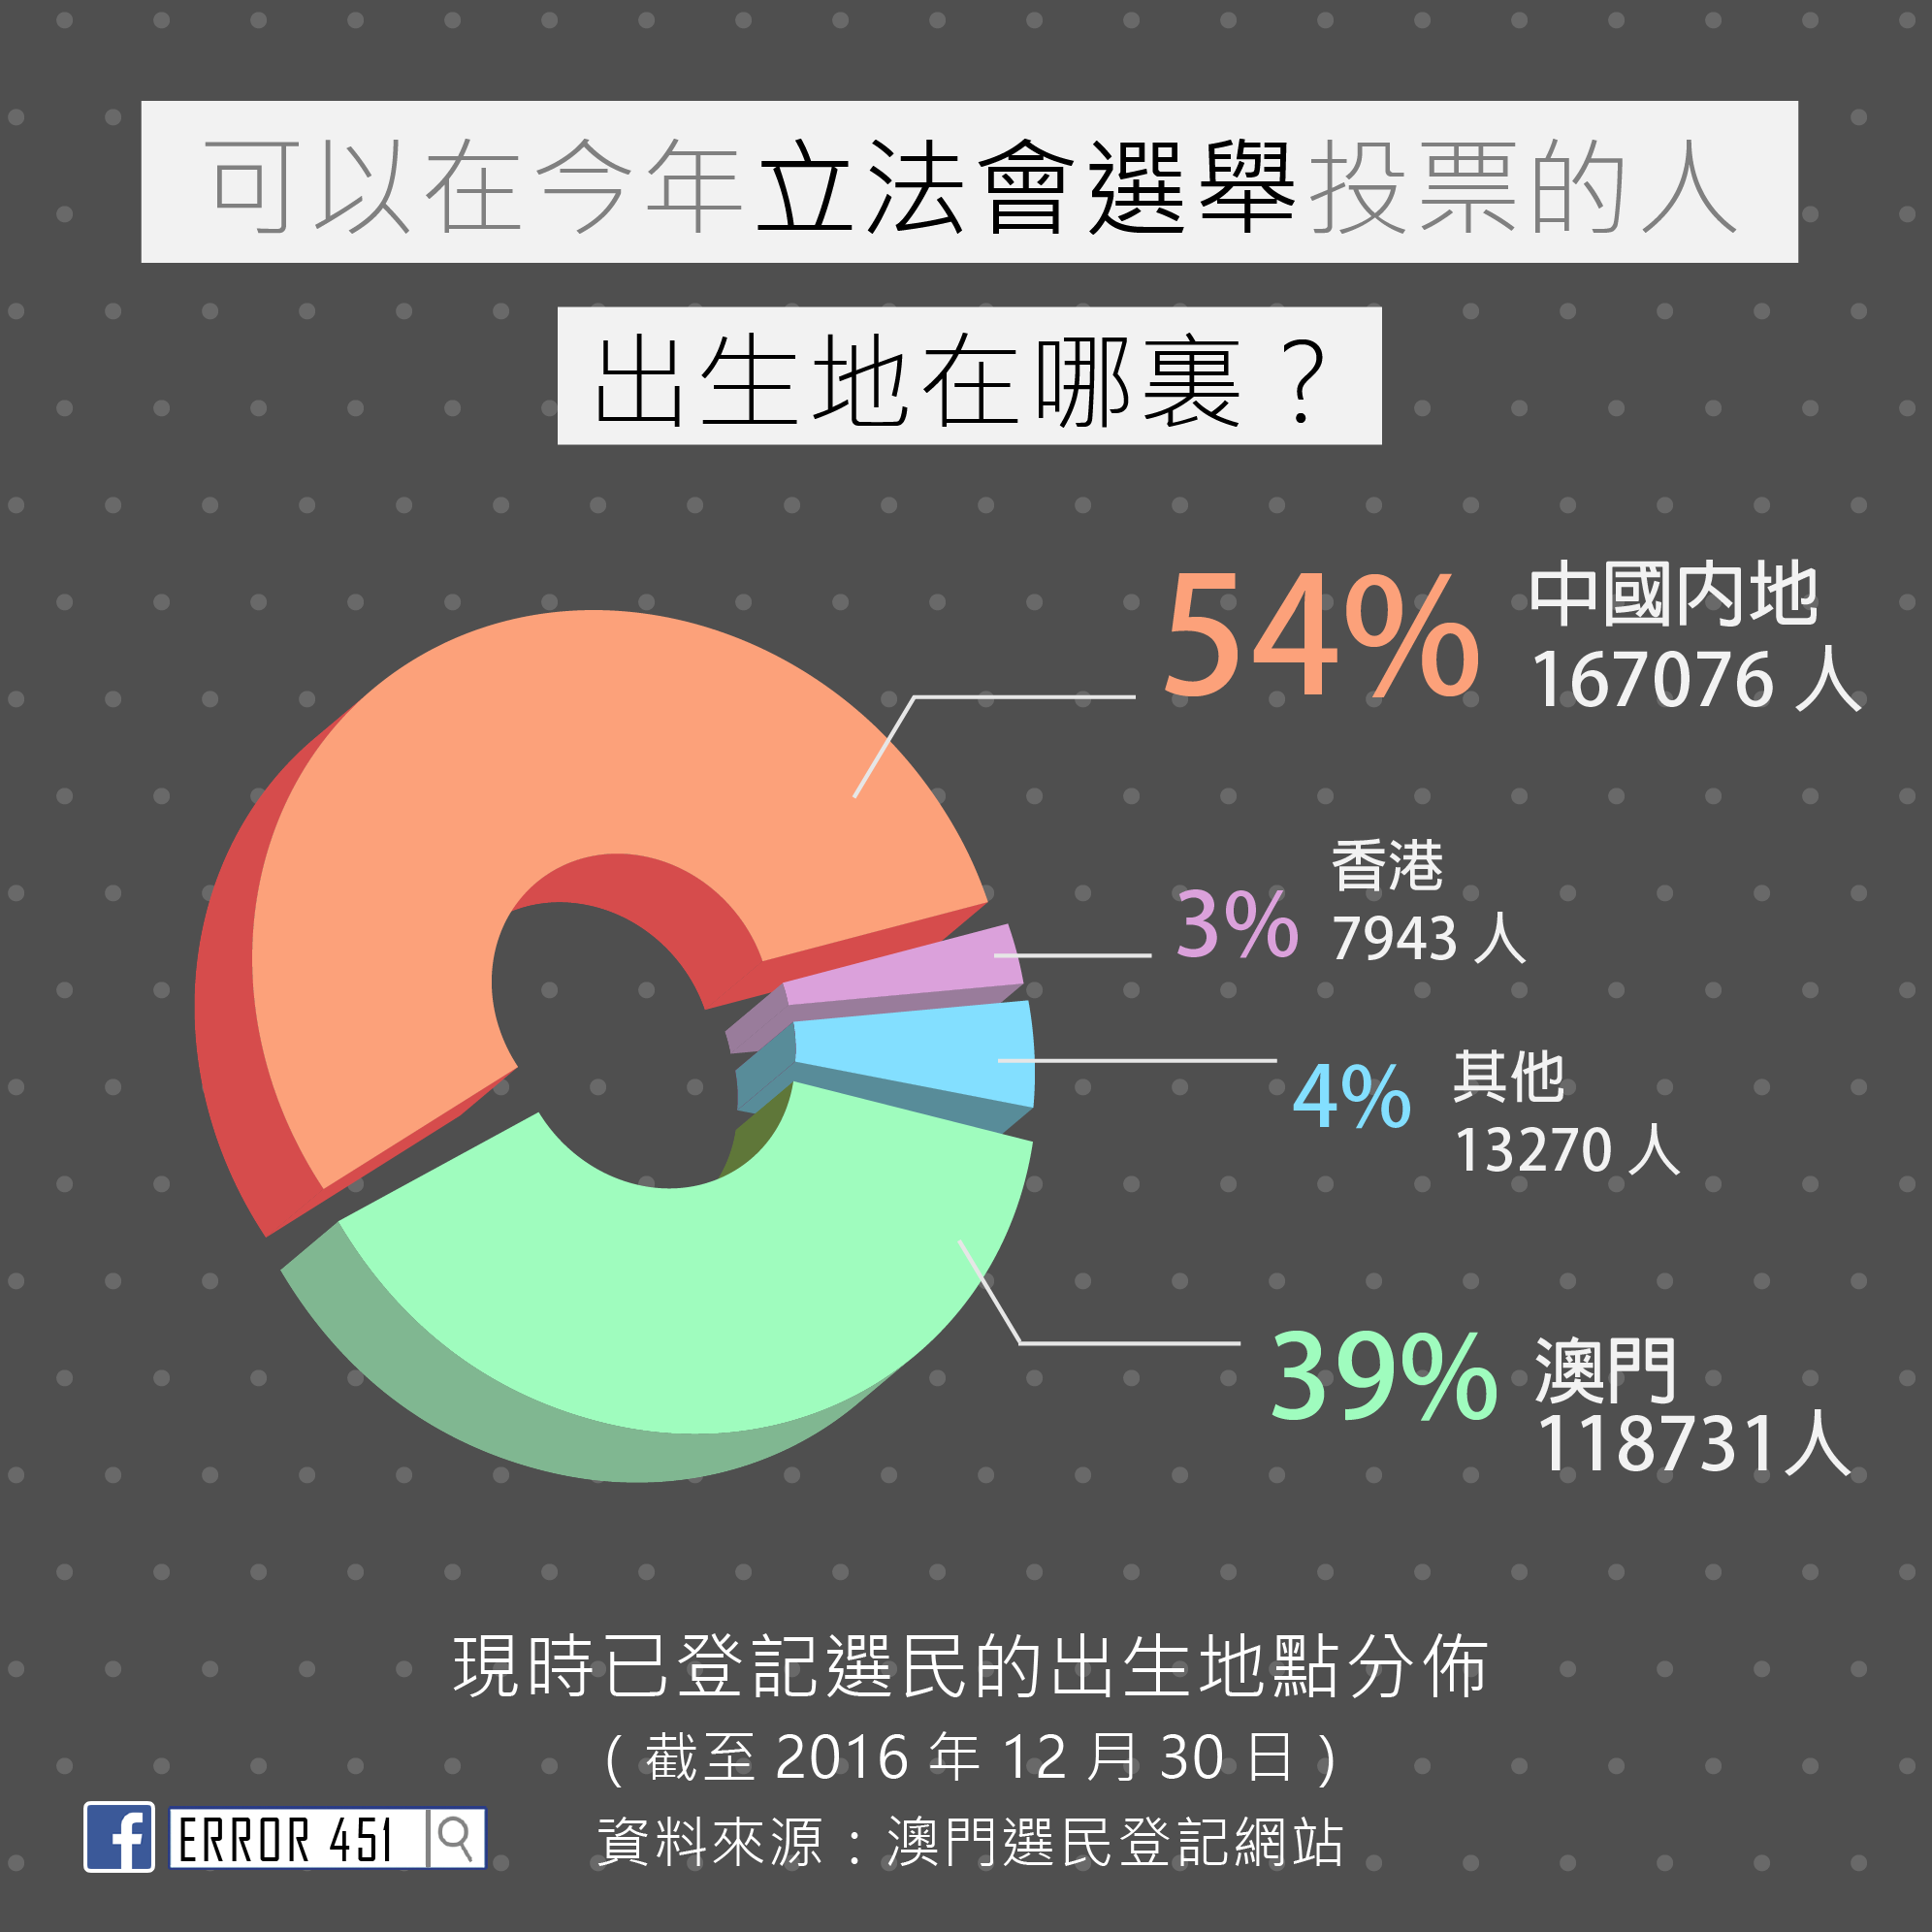 54%中國內地 39%澳門 3%香港 4%其他